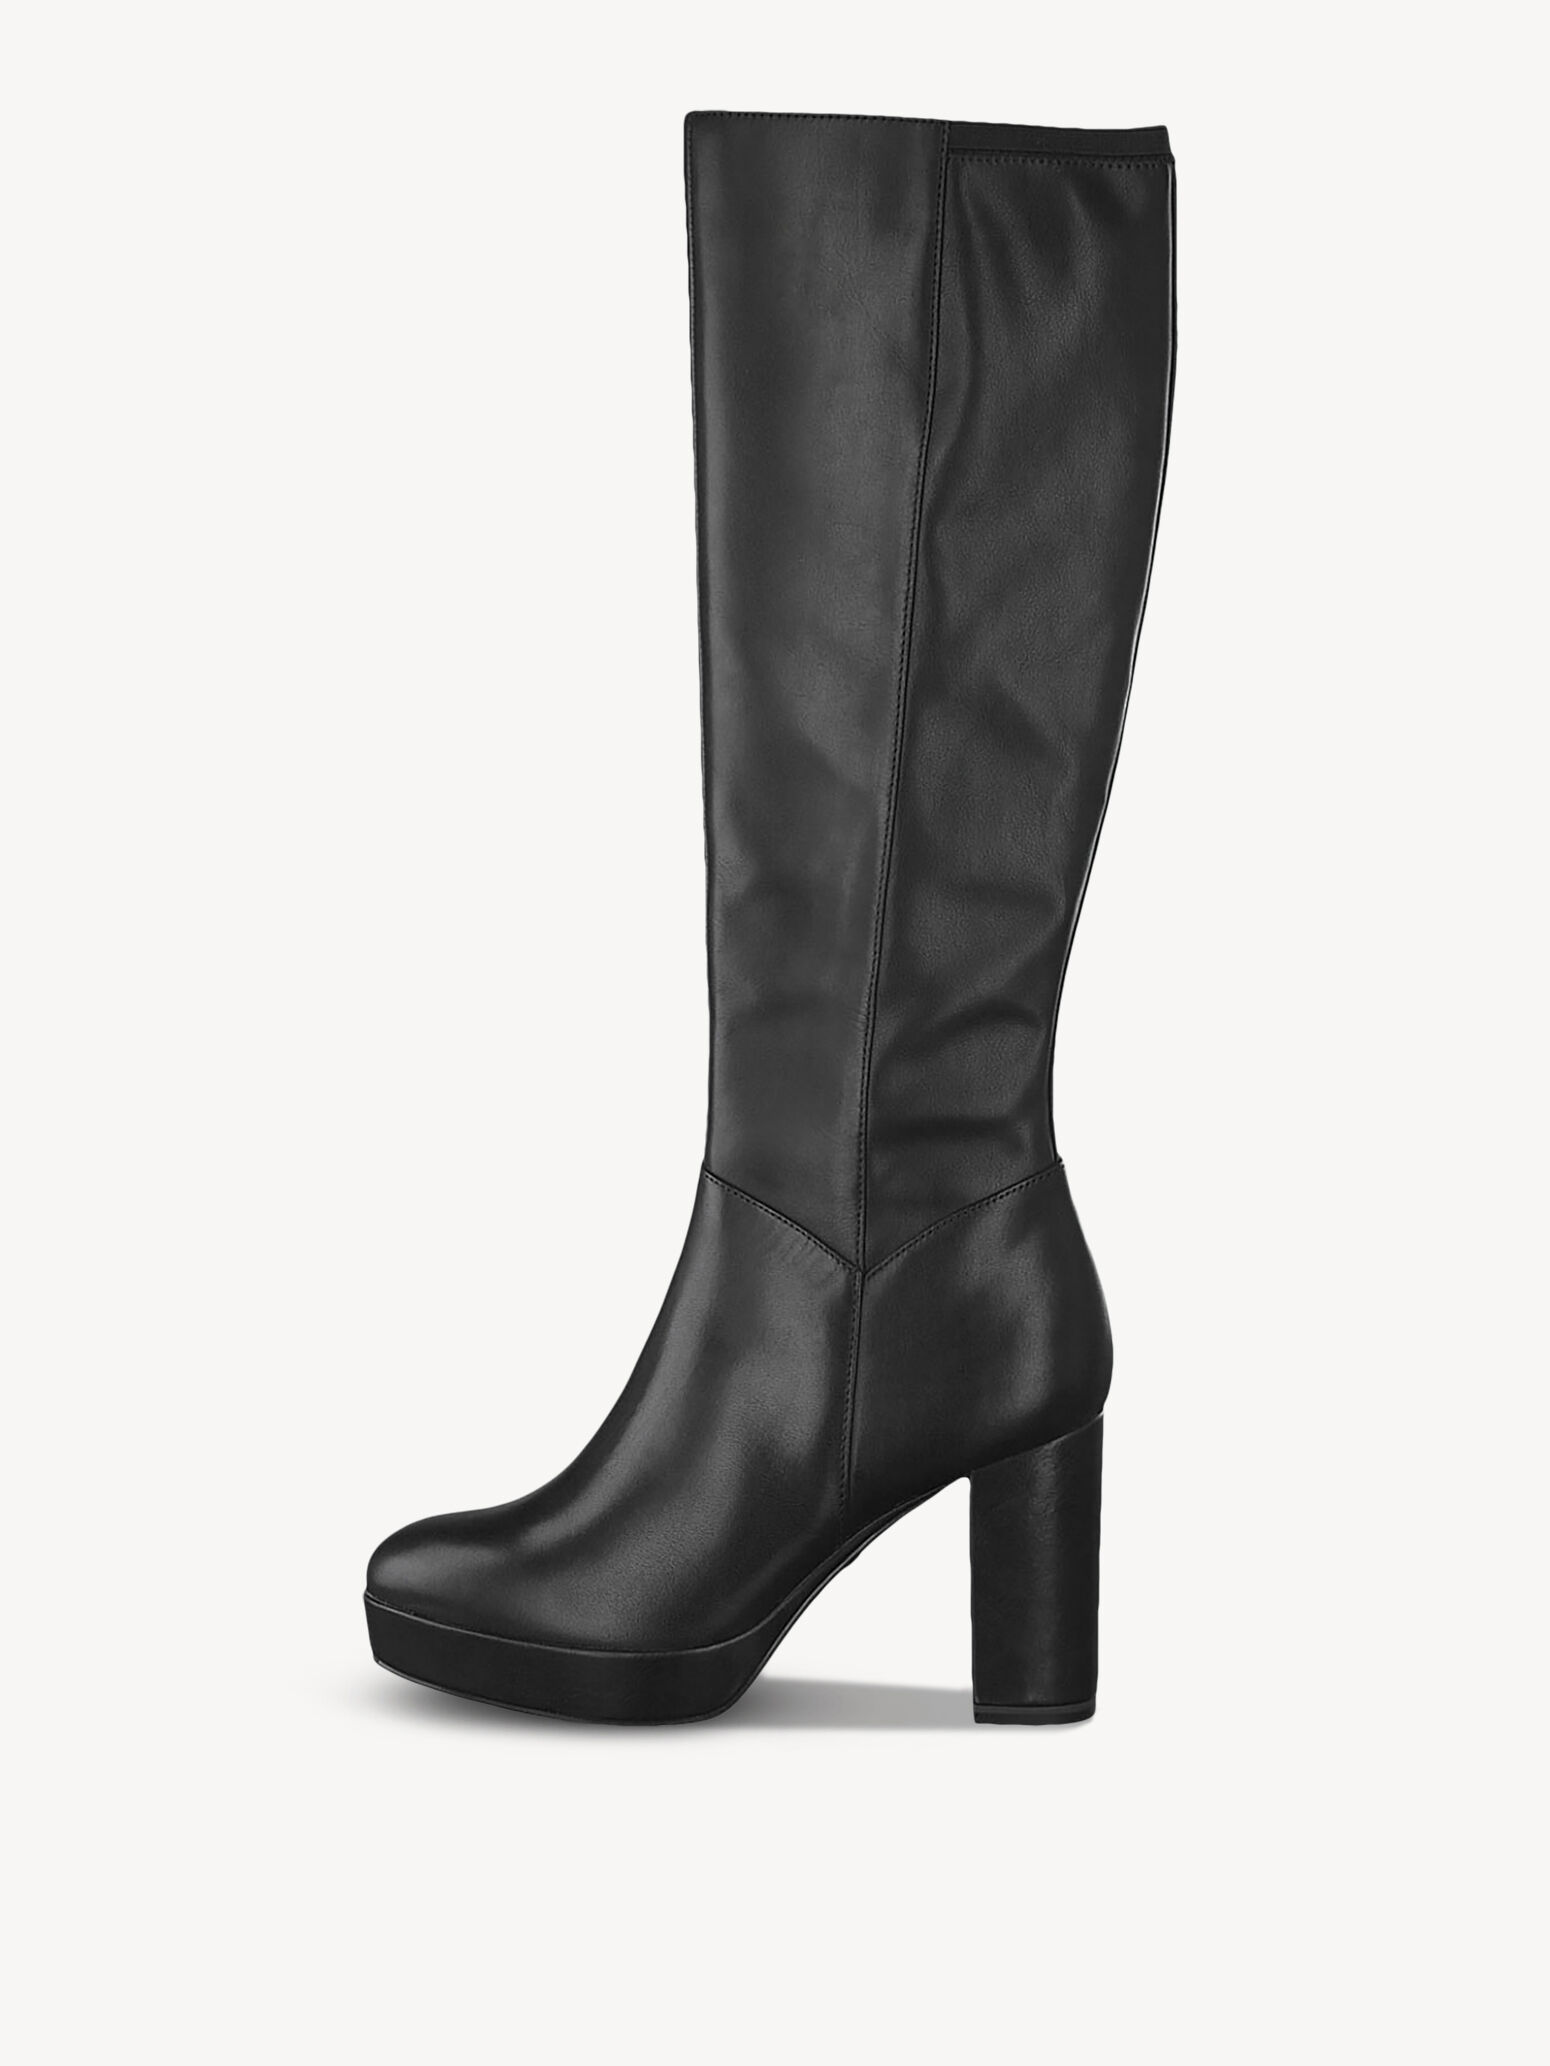 buy ladies boots online